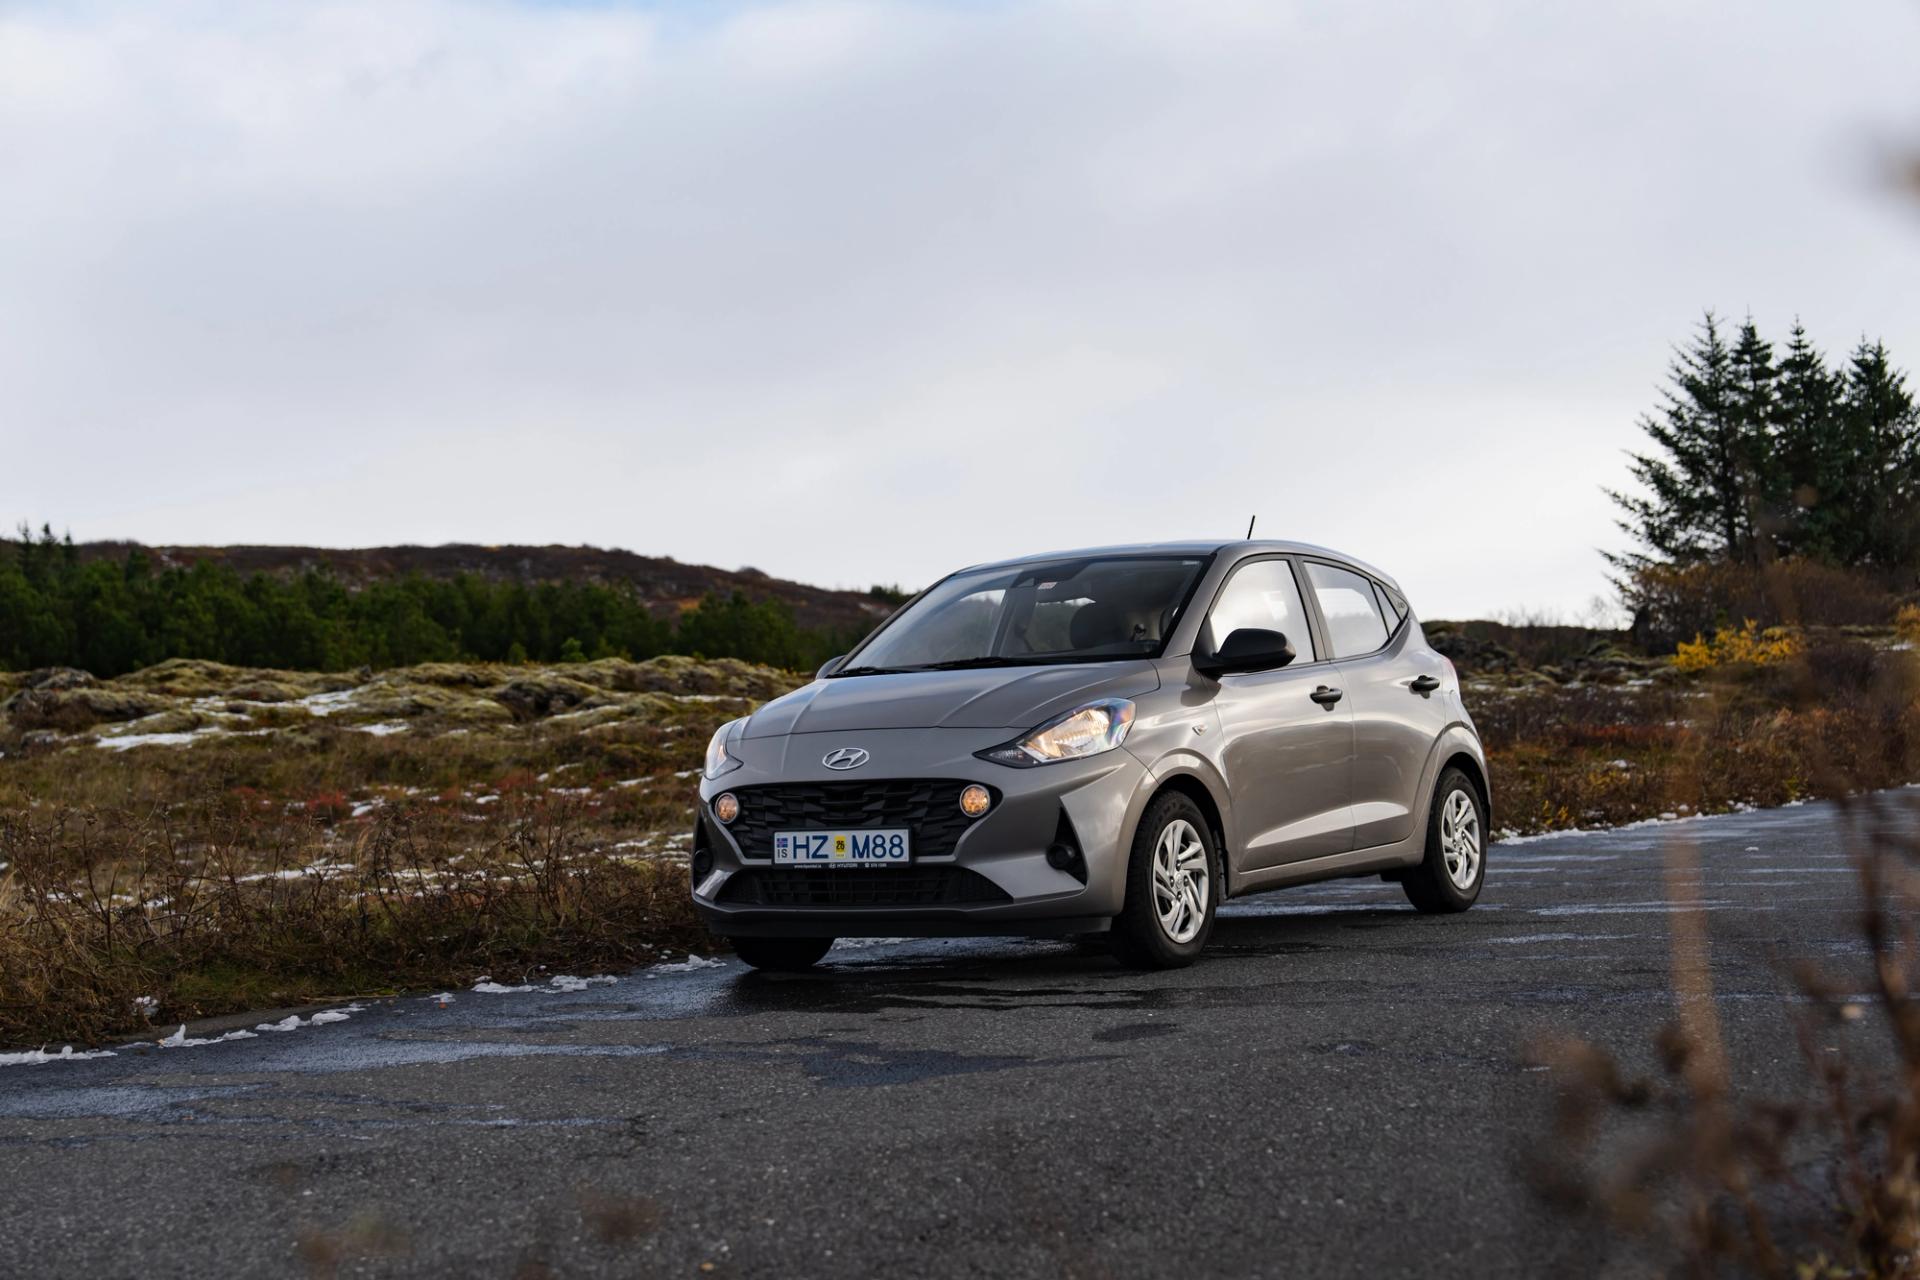 Dökkgrár Hyundai i10 bílaleigubíll í sýningarsal á íslandi